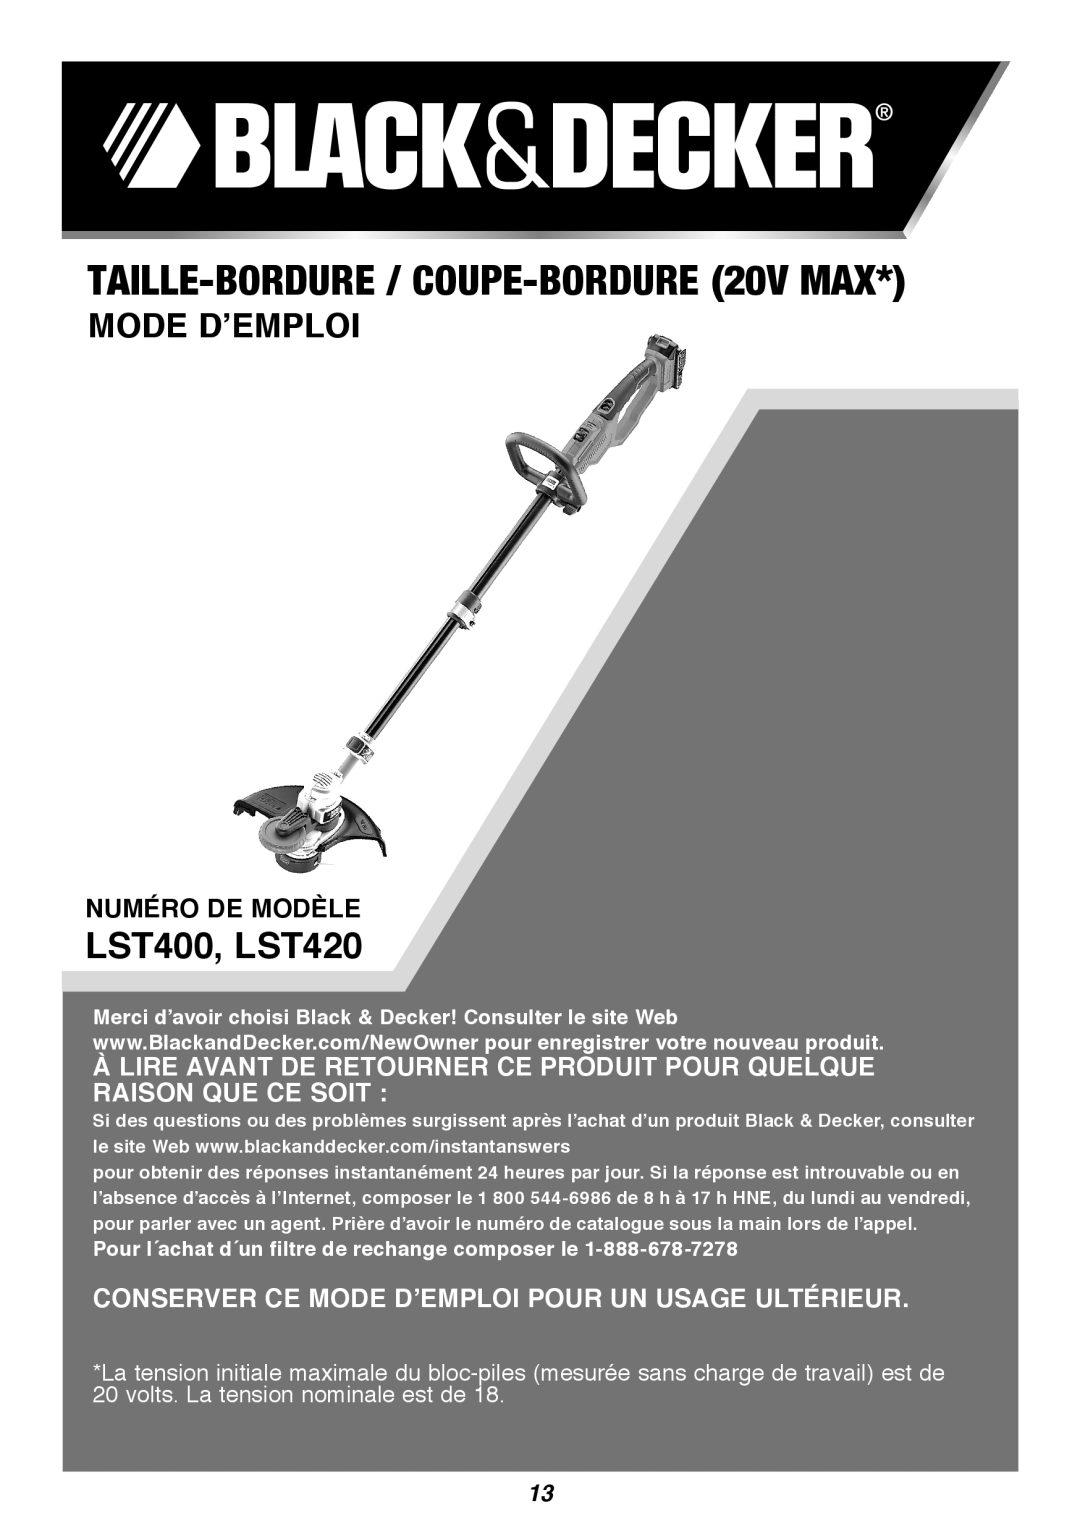 Black & Decker TAILLE-BORDURE / COUPE-BORDURE 20v Max, Mode D’Emploi, Numéro de modèle, LST400, LST420 